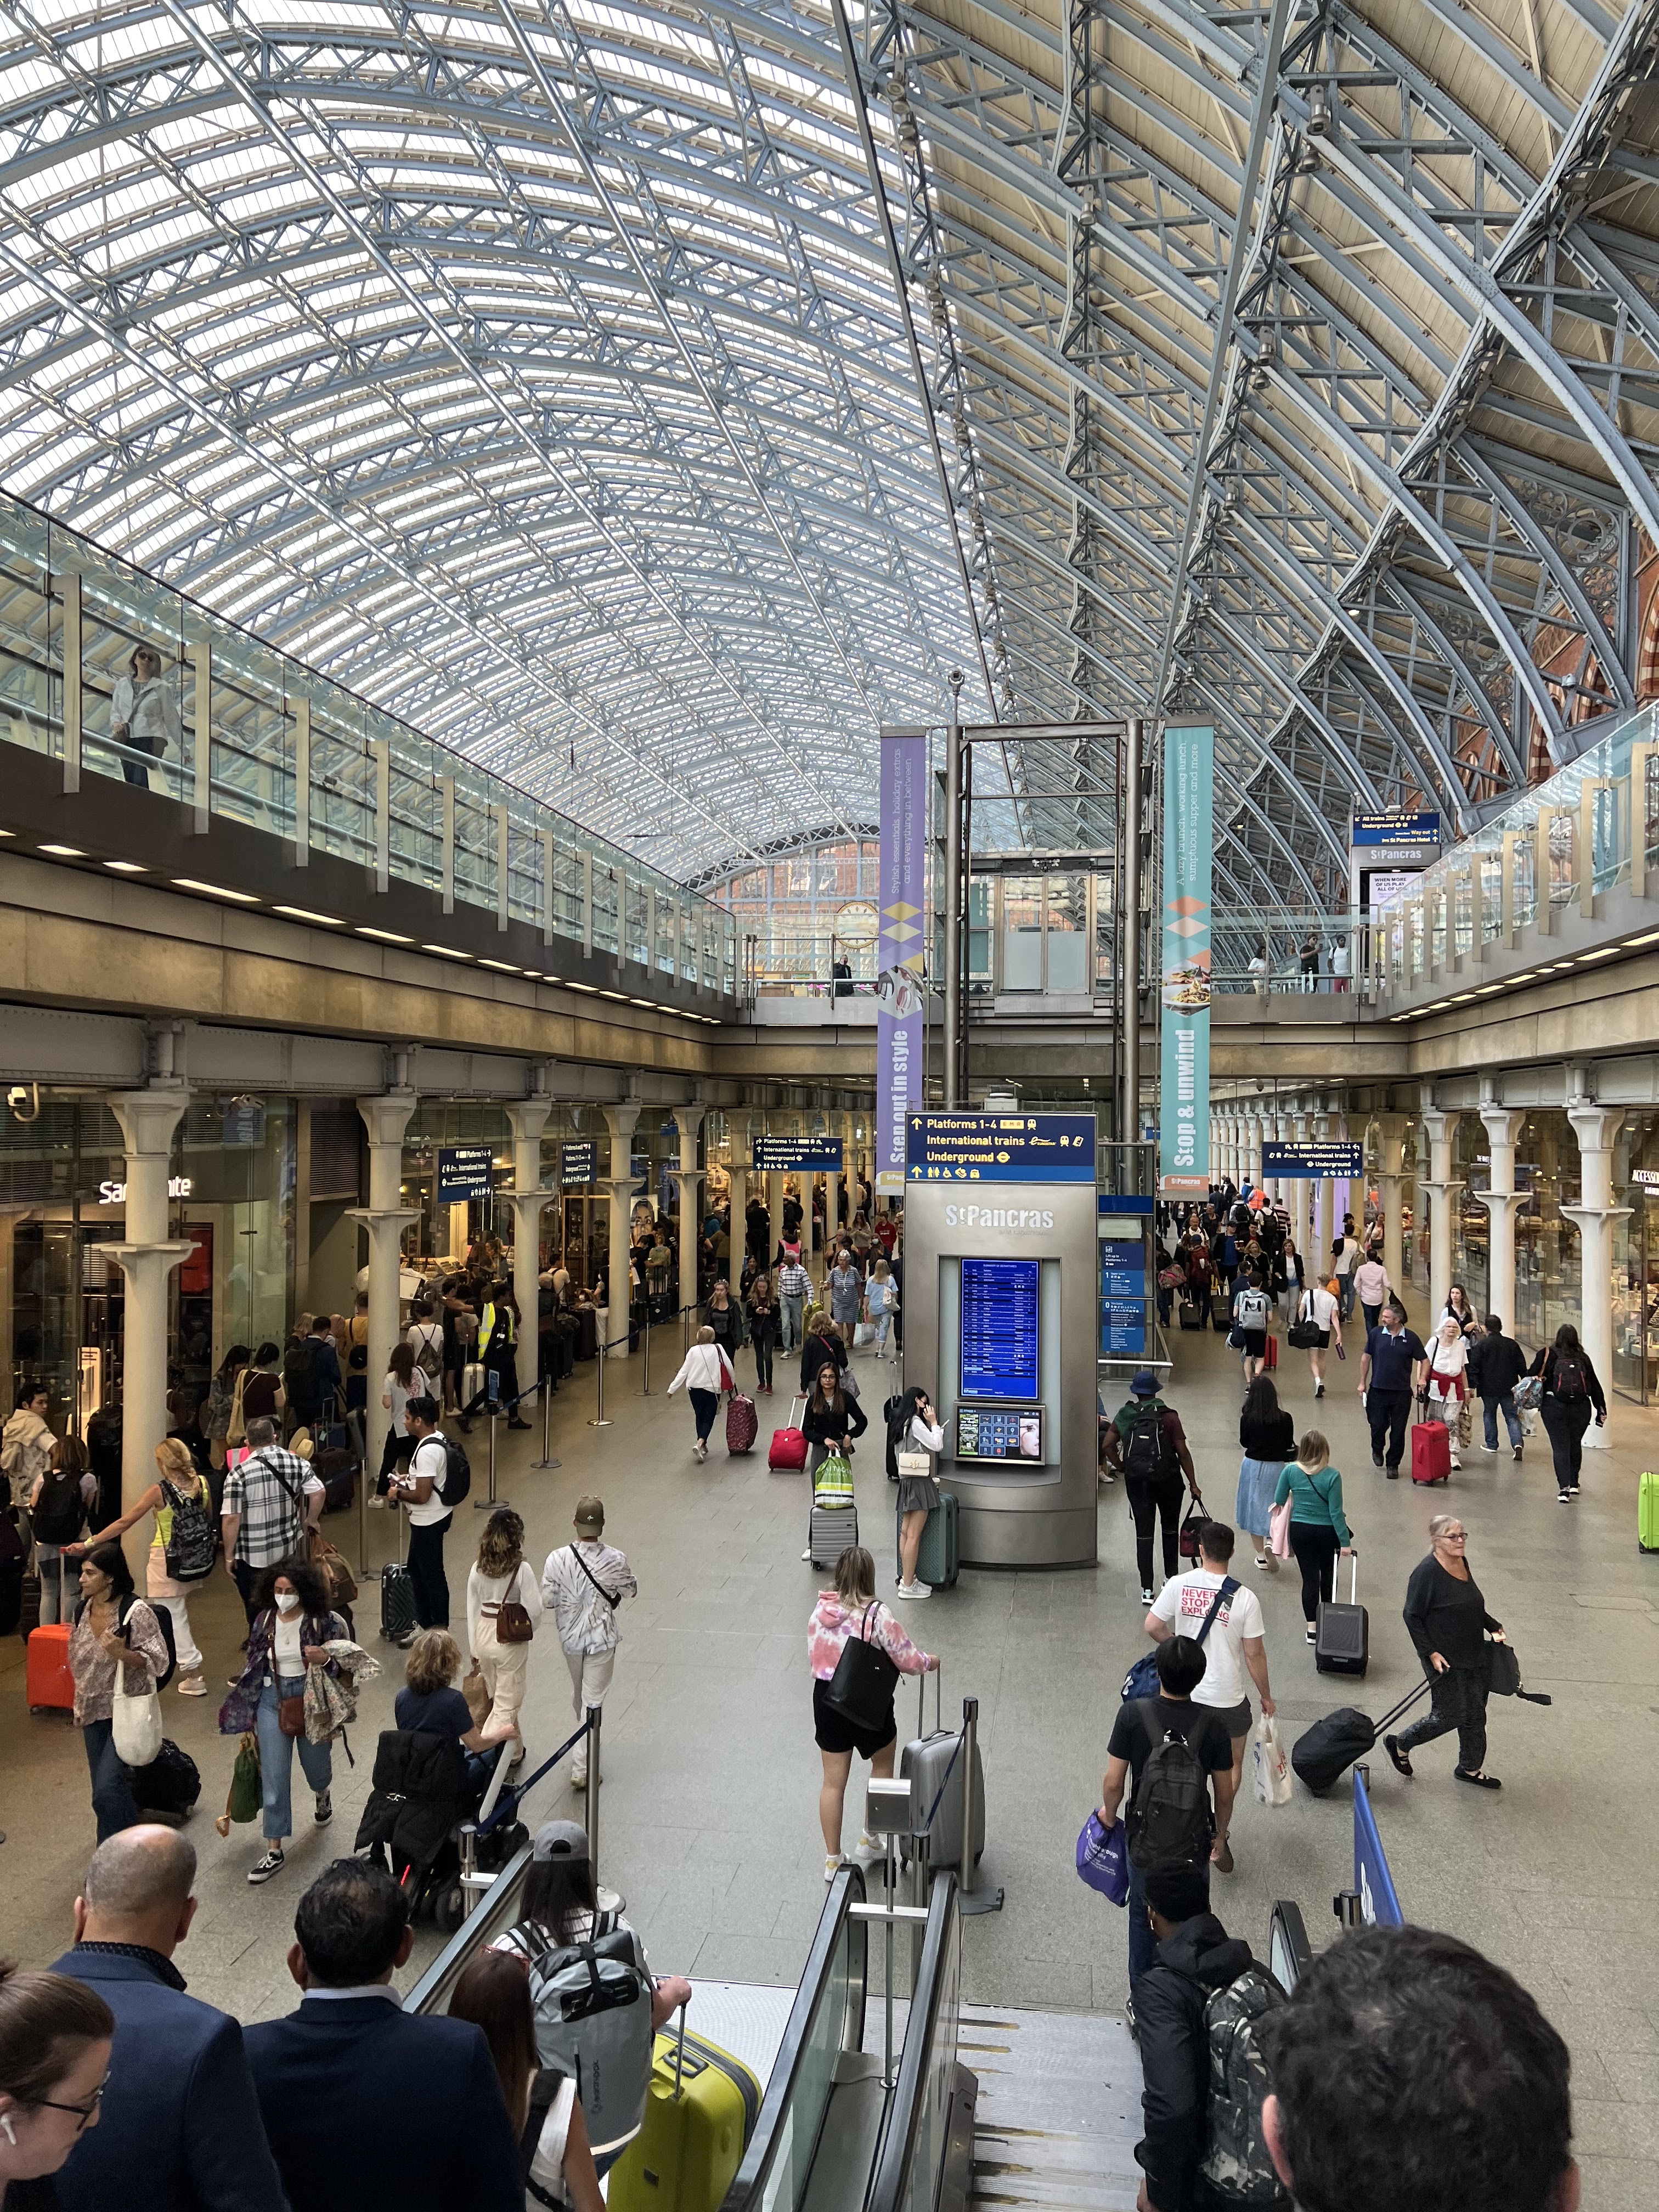 Adrienne Nguyen_Birmingham UK_Explore United Kingdom_UK Travel_Travel Blogger_St. Pancras Train Station_London